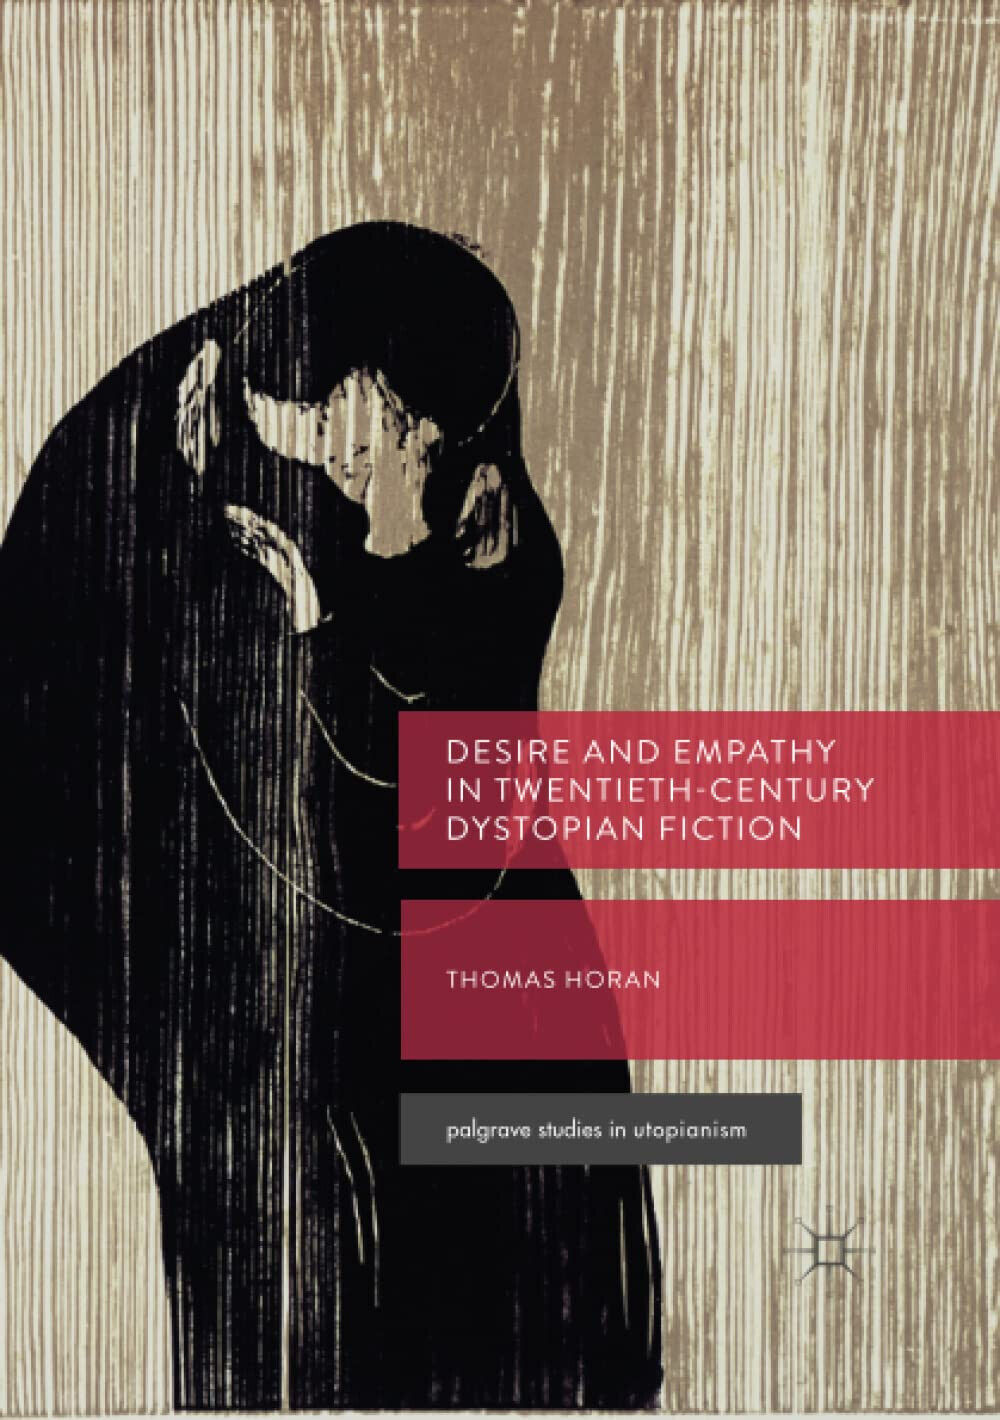 Desire and Empathy in Twentieth-Century Dystopian Fiction - Thomas Horan - 2019